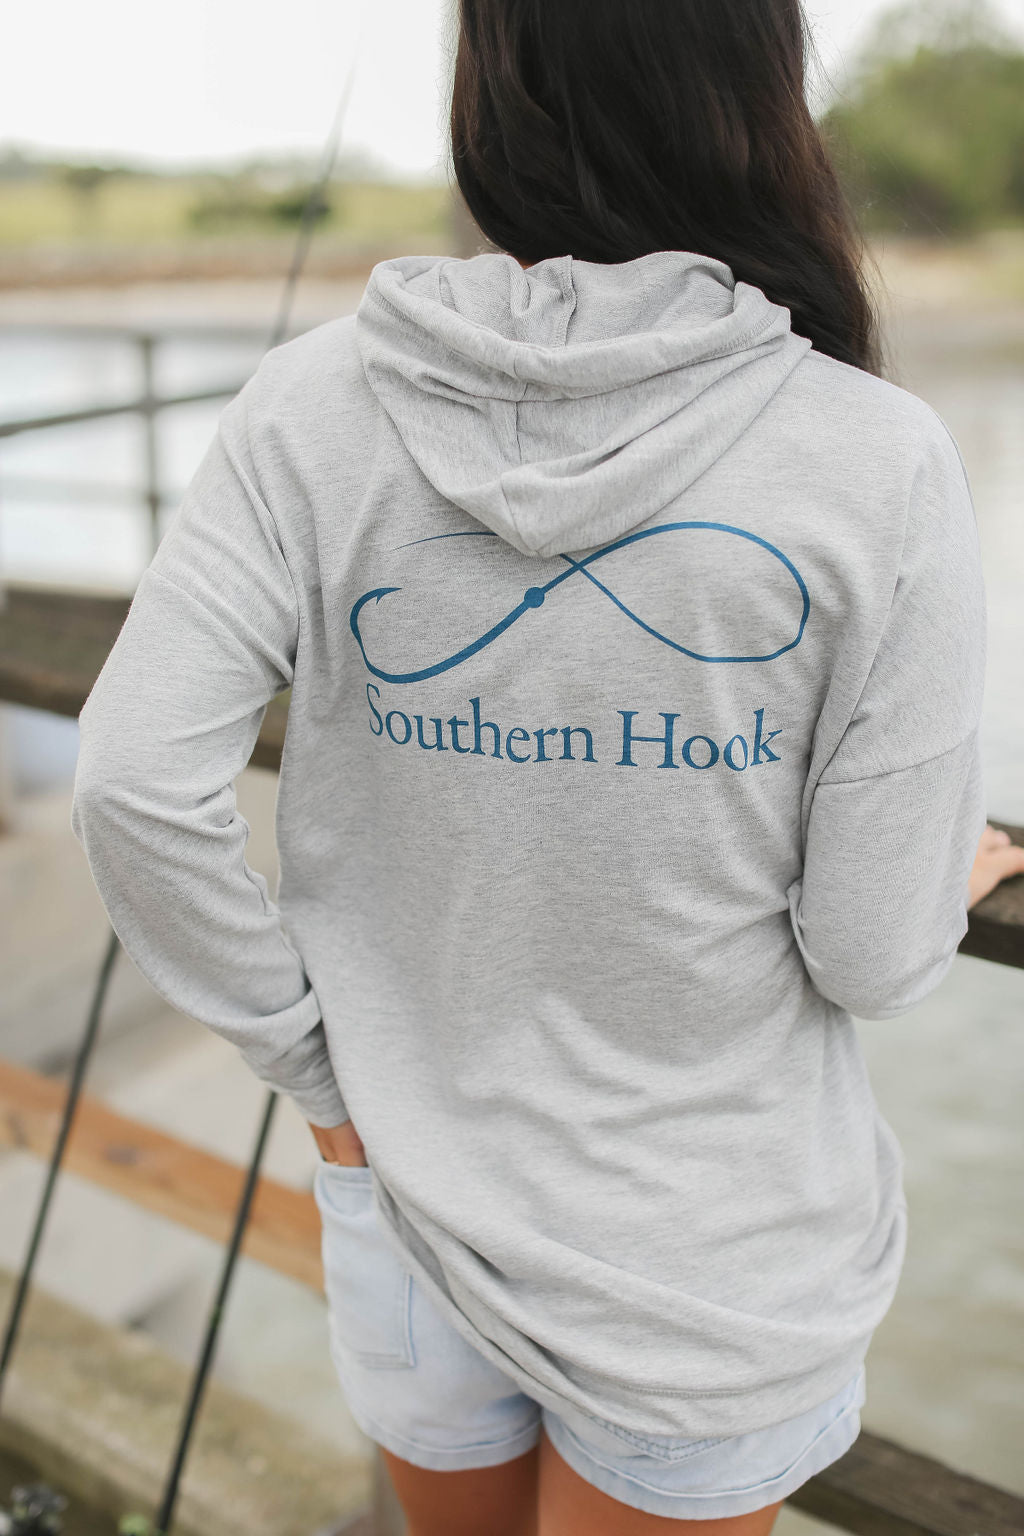 Southern Hook Hoodie